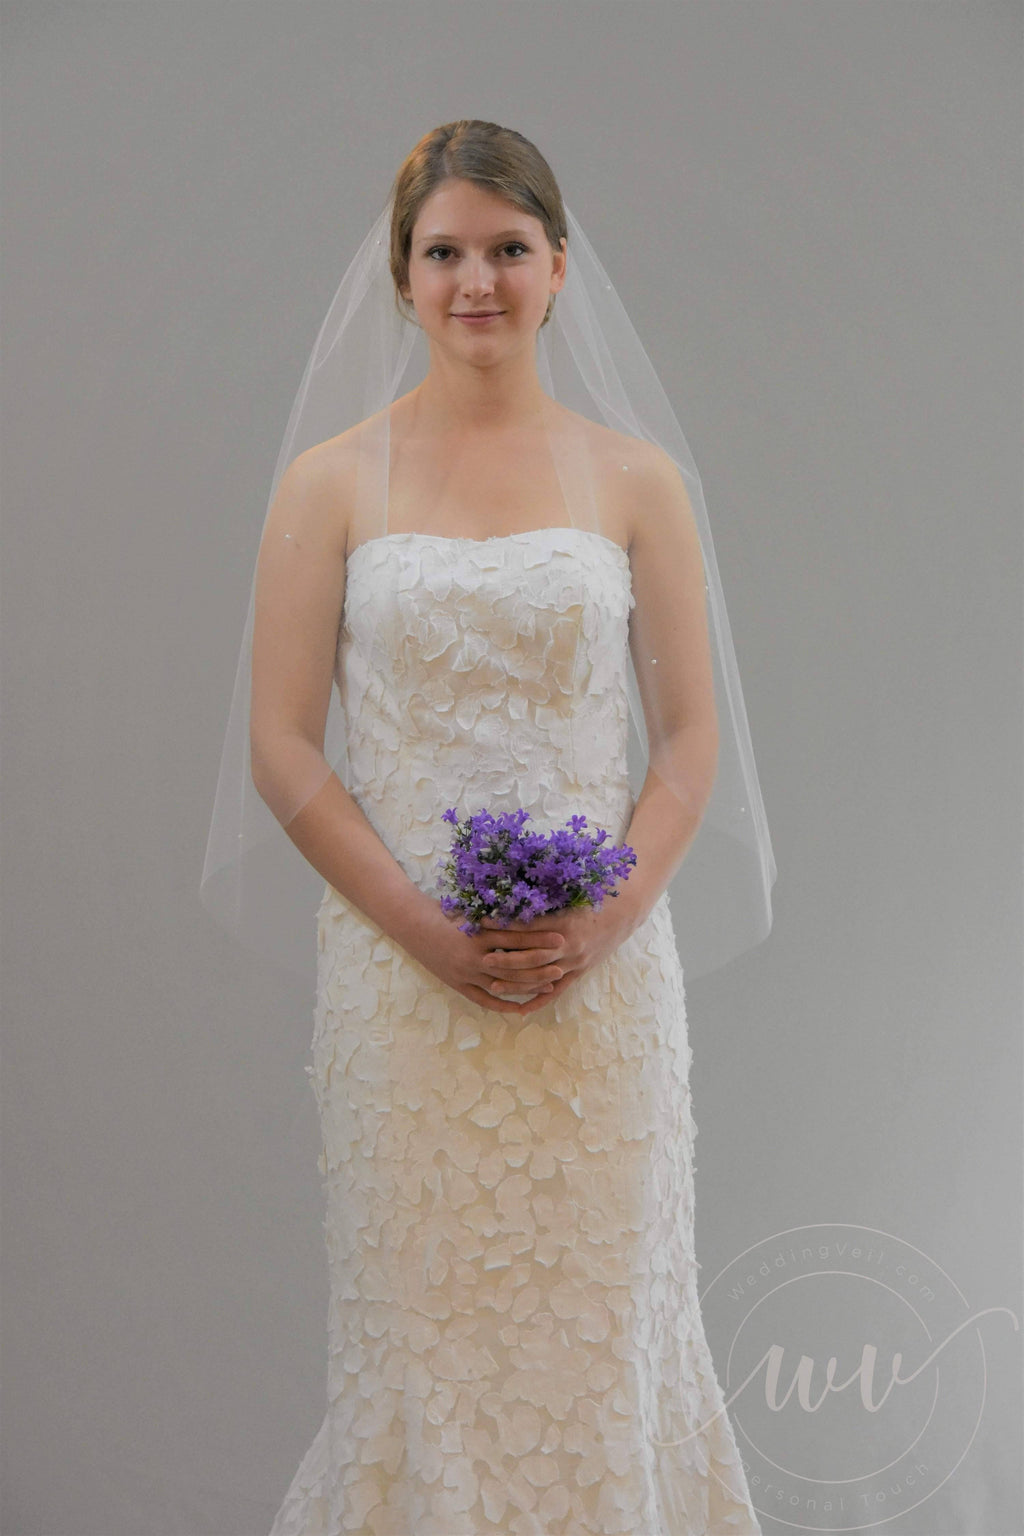 Sheer Hip Length Veil with Pearls - WeddingVeil.com